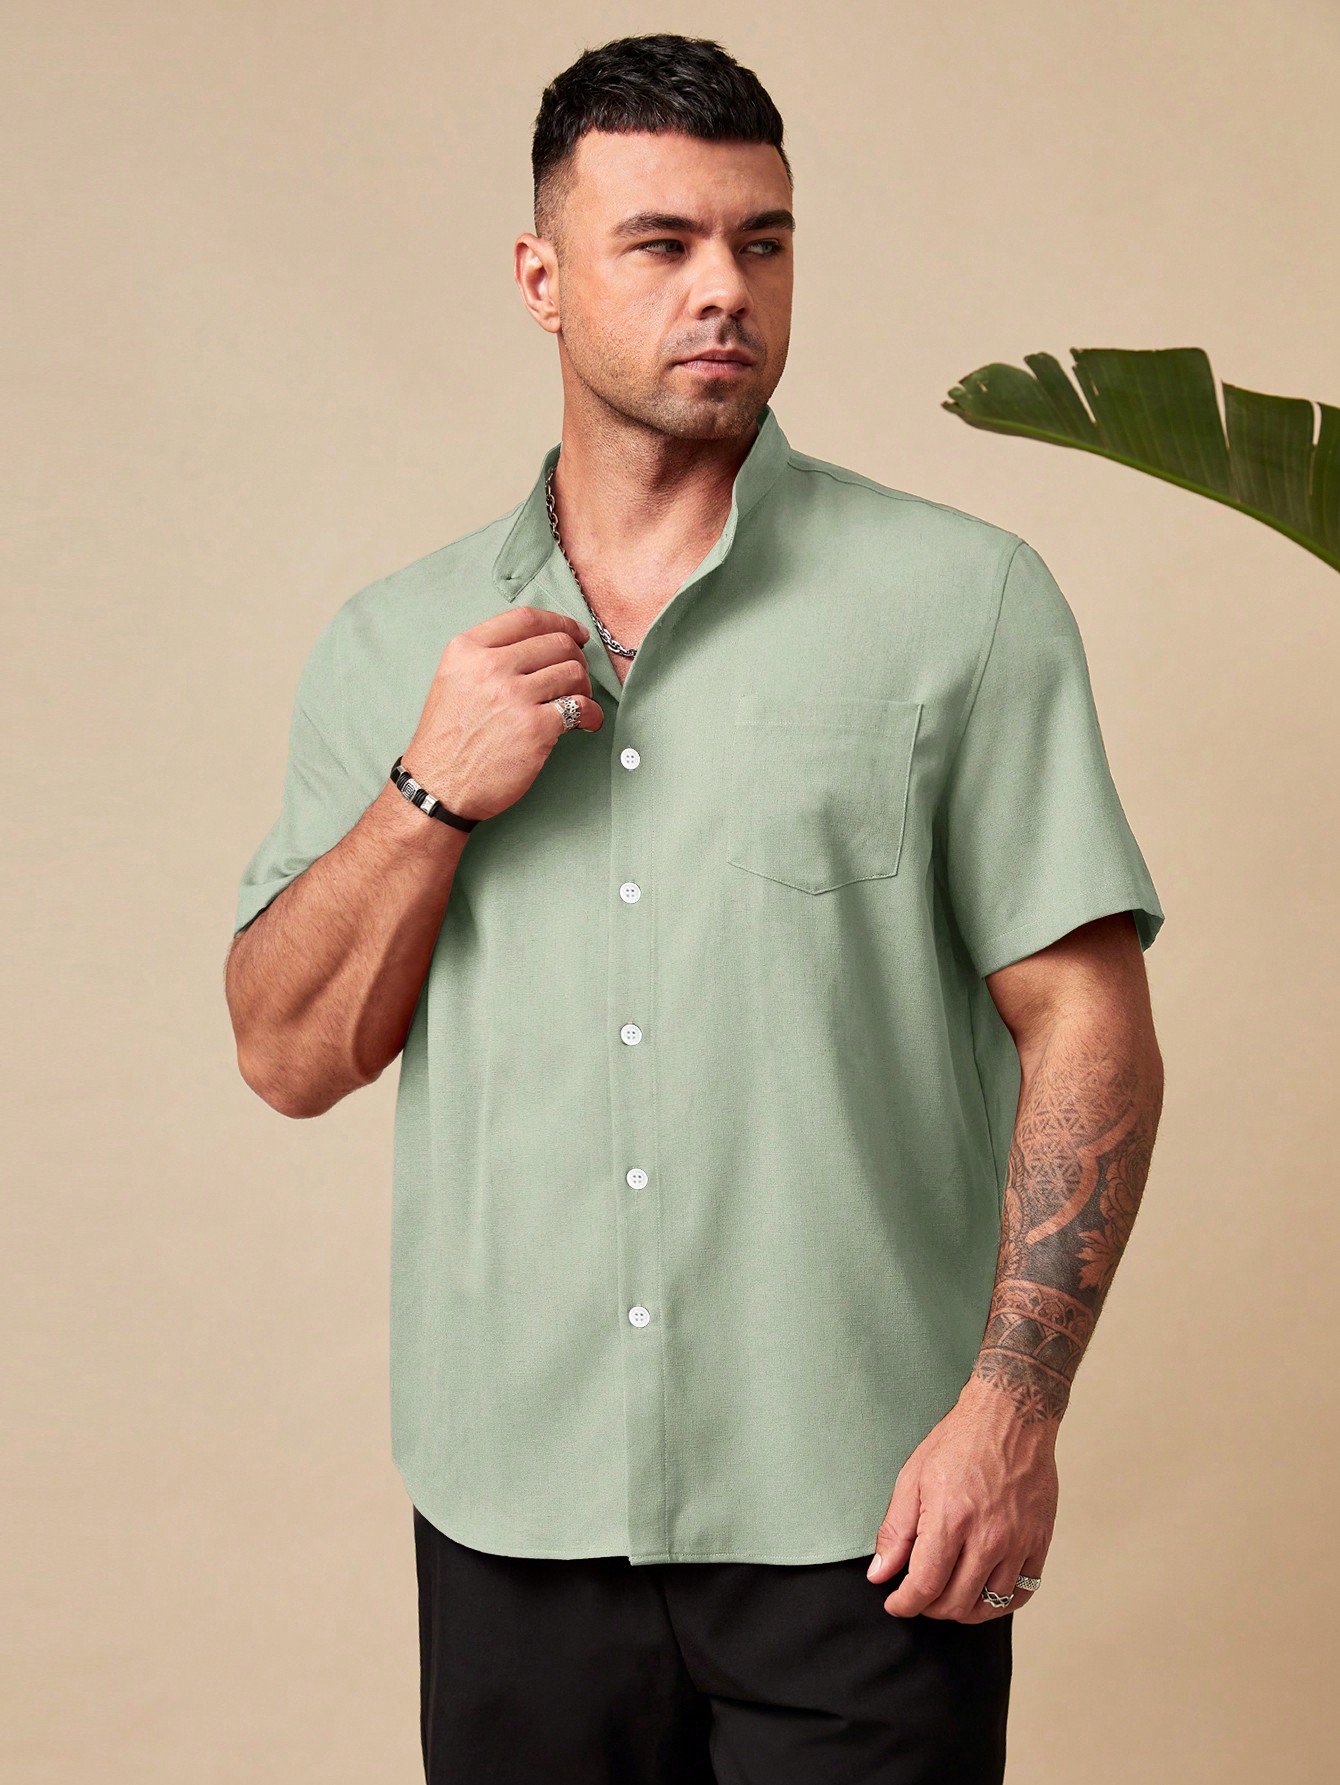 цена Manfinity Homme Мужская рубашка свободного кроя больших размеров на пуговицах с короткими рукавами и накладными карманами больших размеров, зеленый